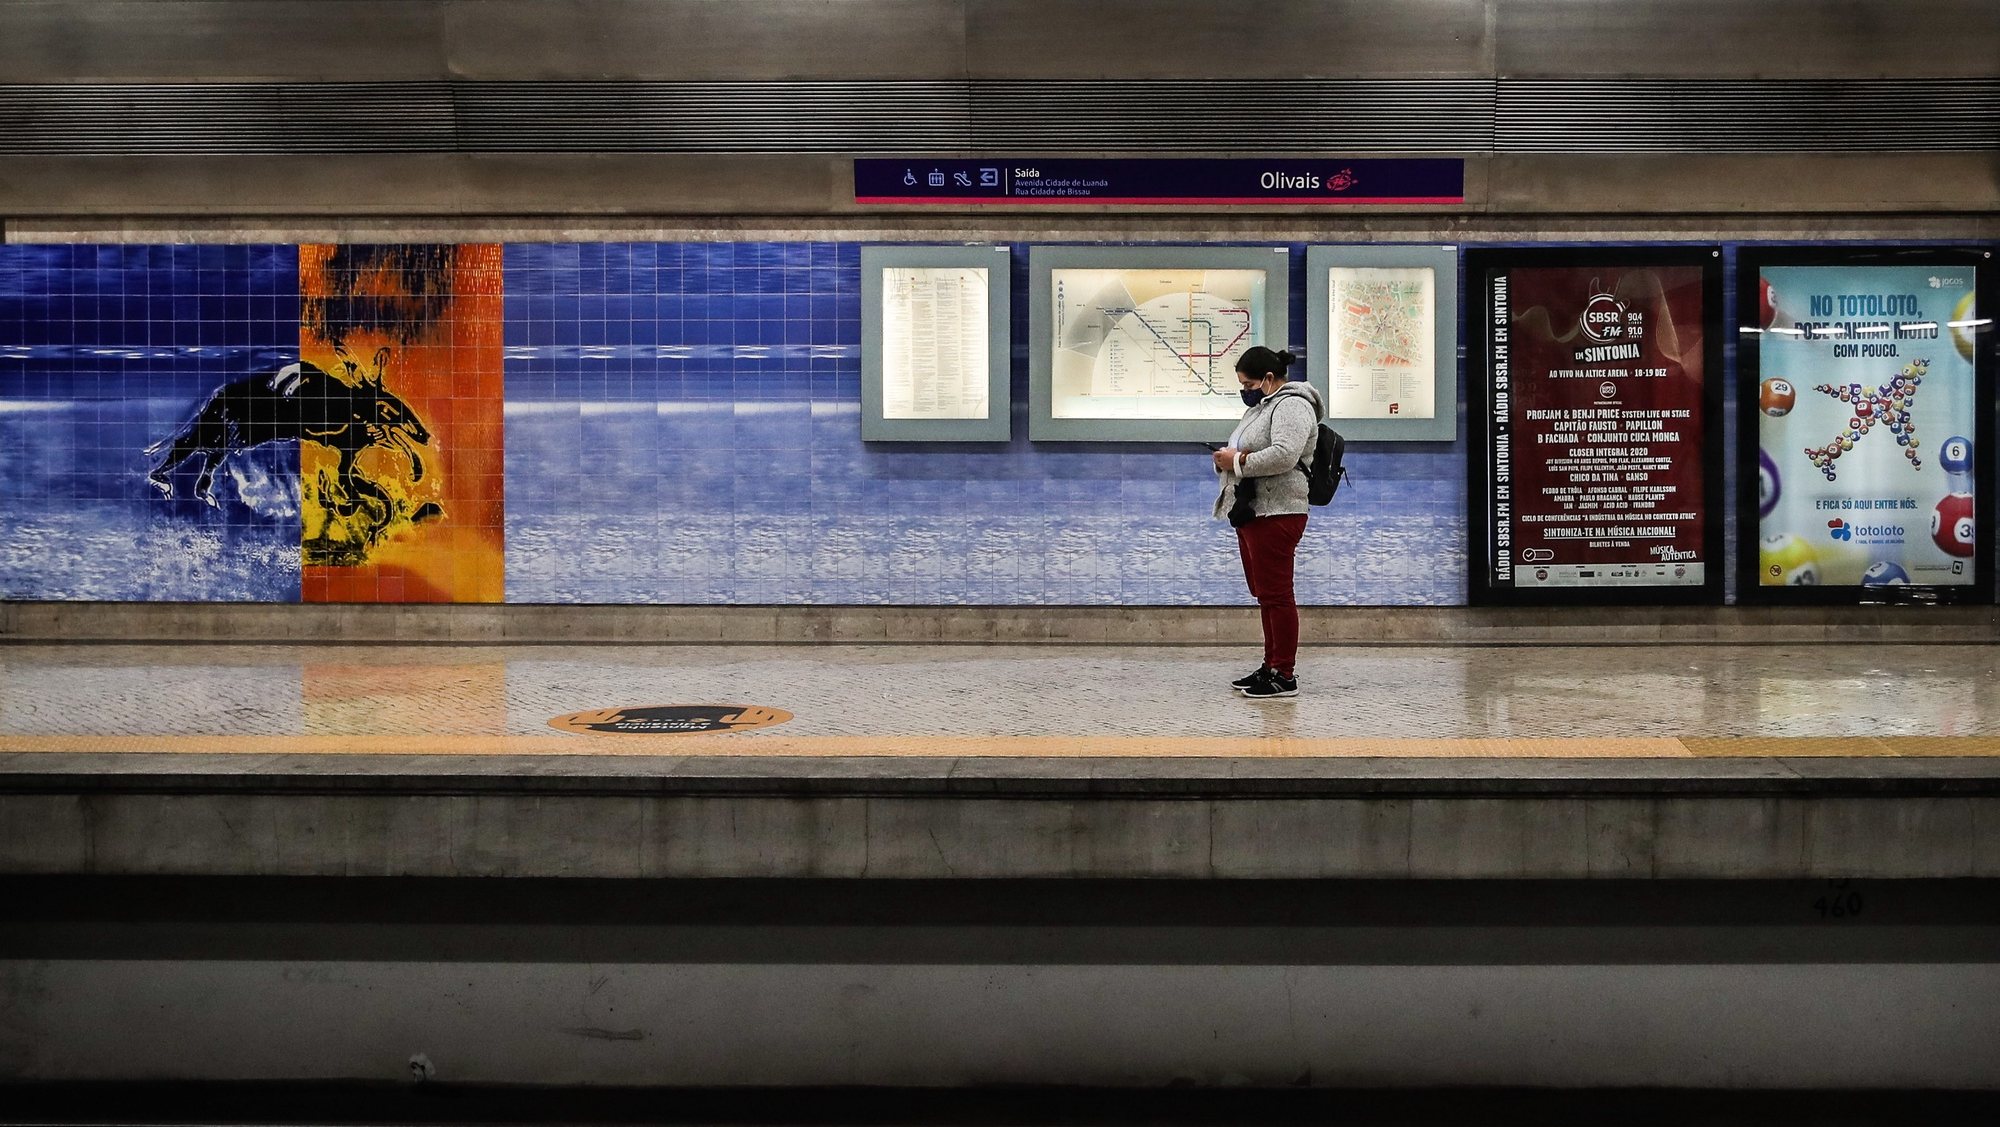 Estação do Metro dos Olivais depois das obras de requalificação e onde já existe a funcionalidade de pagamentos sem contacto nas máquinas automáticas de venda de títulos da rede do Metropolitano de Lisboa, em Lisboa, 4 de novembro de 2020. MÁRIO CRUZ/LUSA